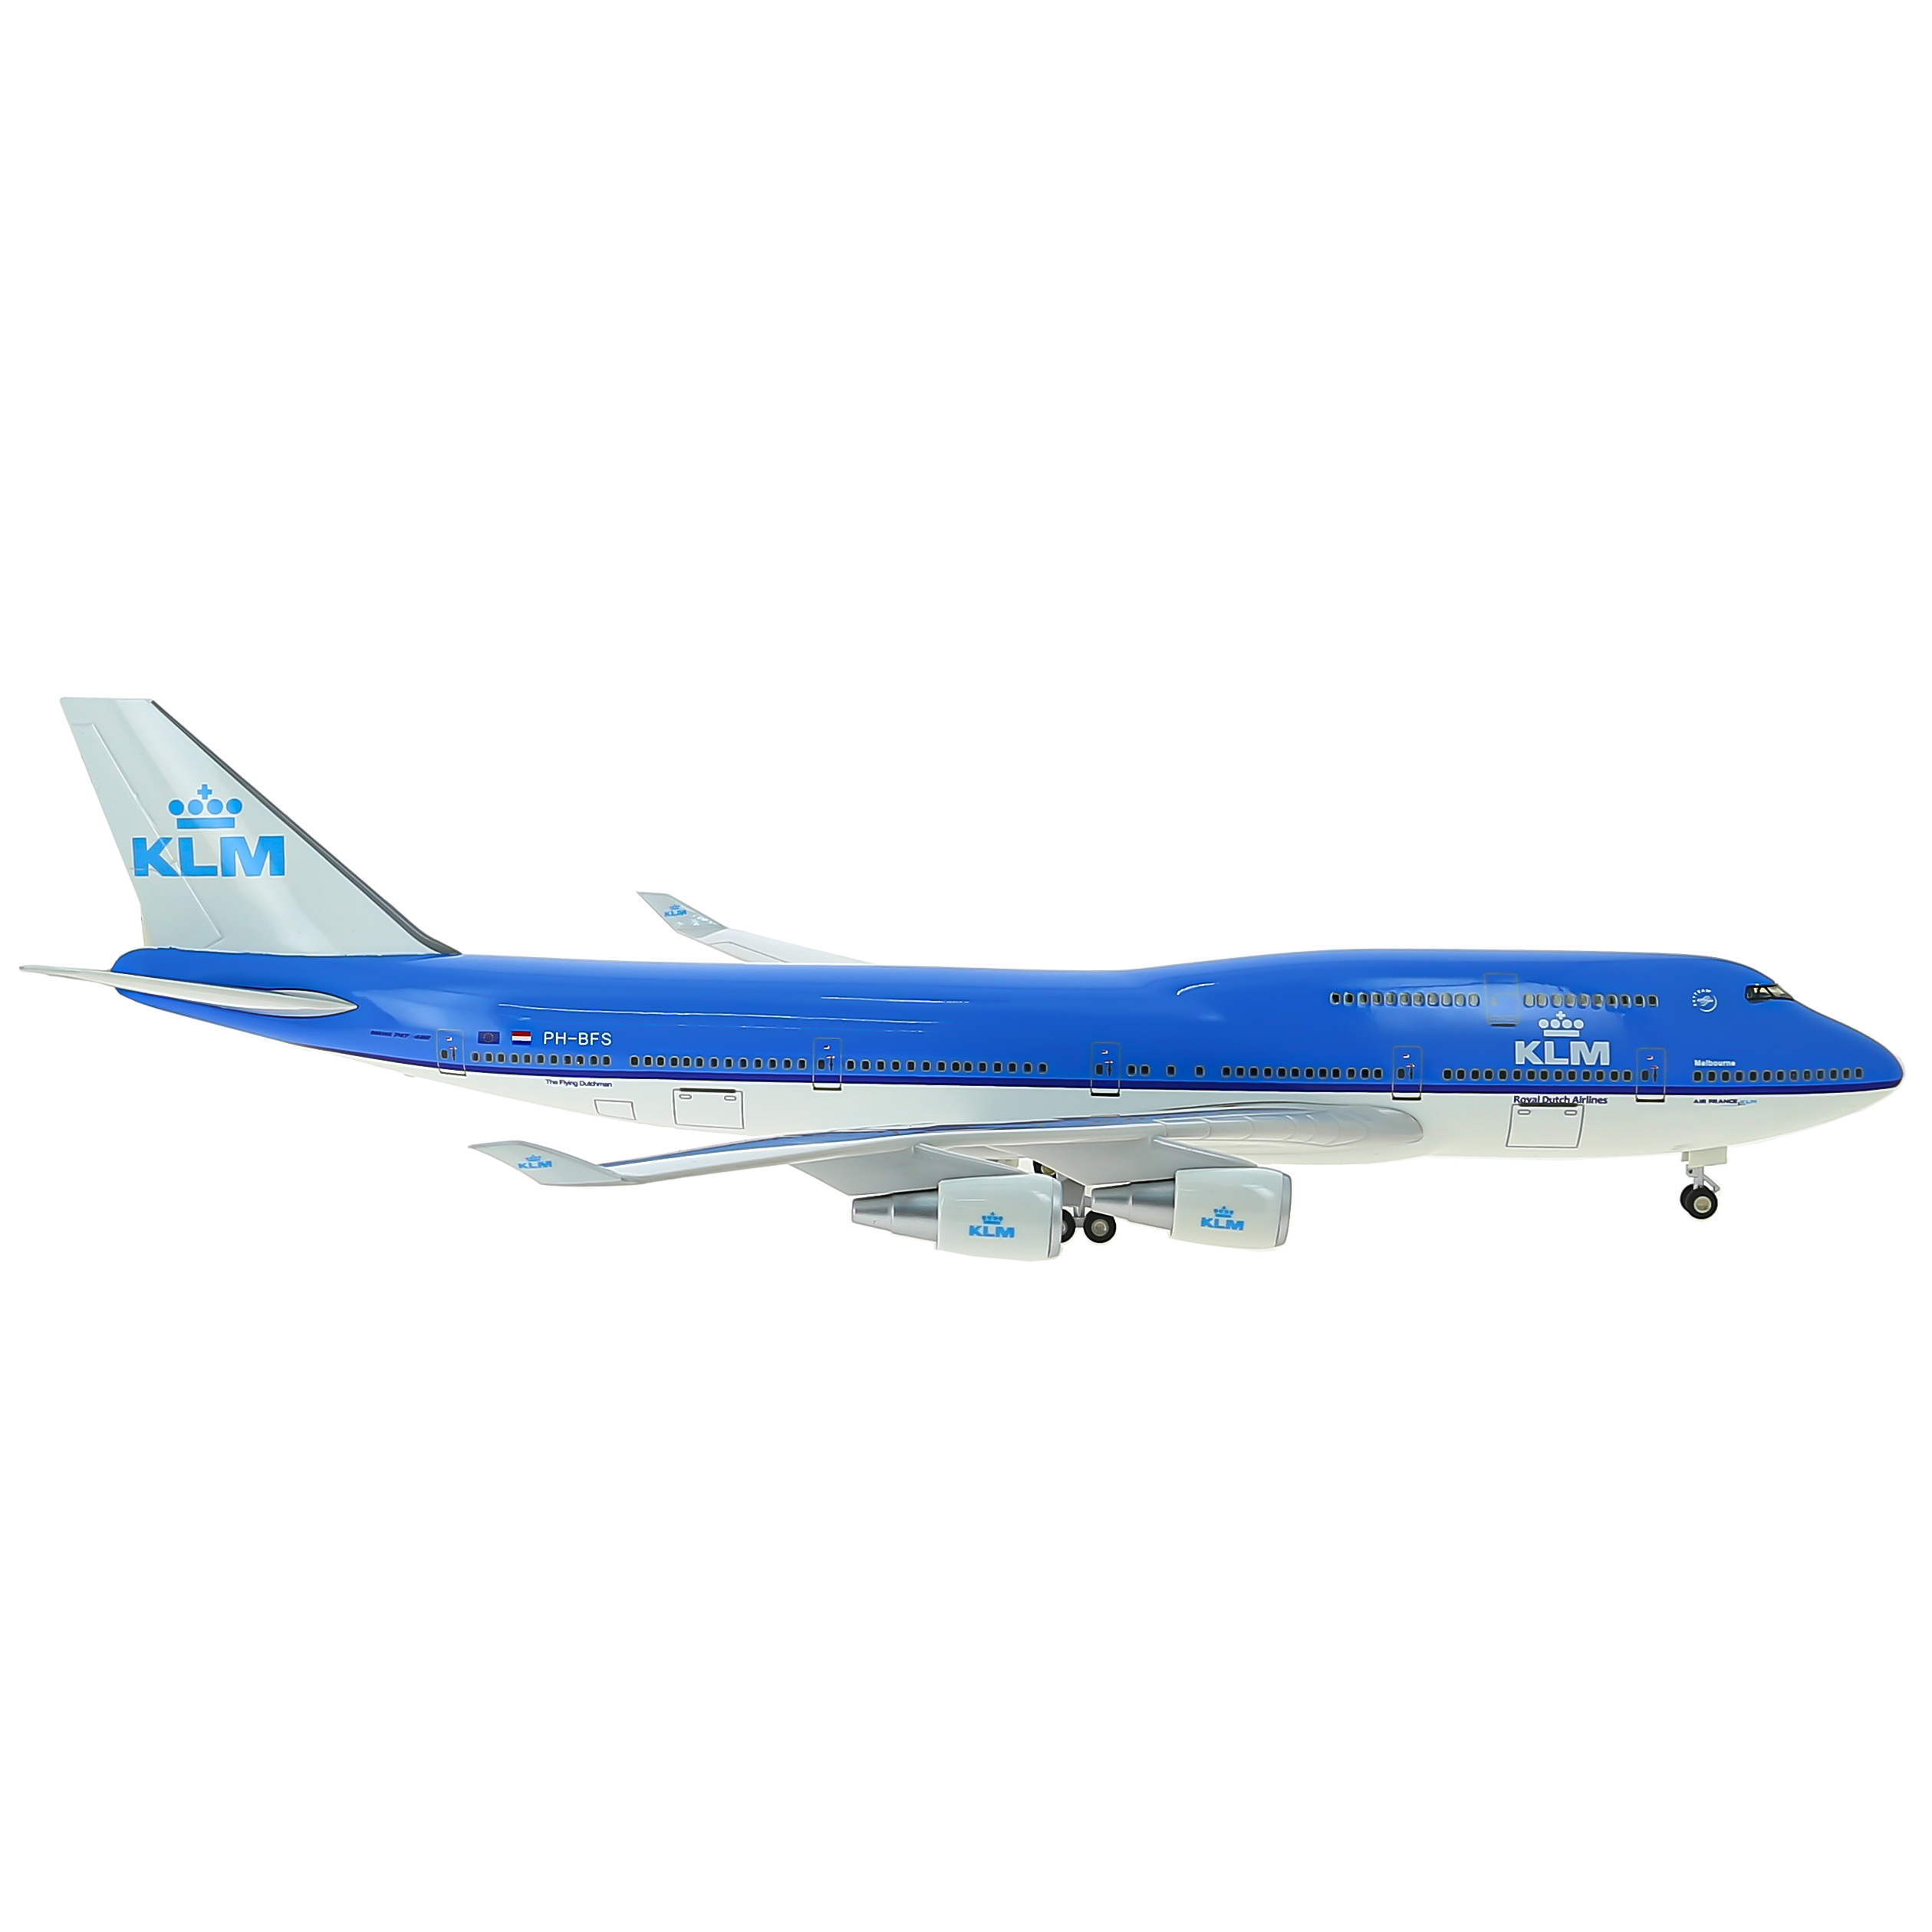     747  KLM,   .  47 . # 10 hobbyplus.ru